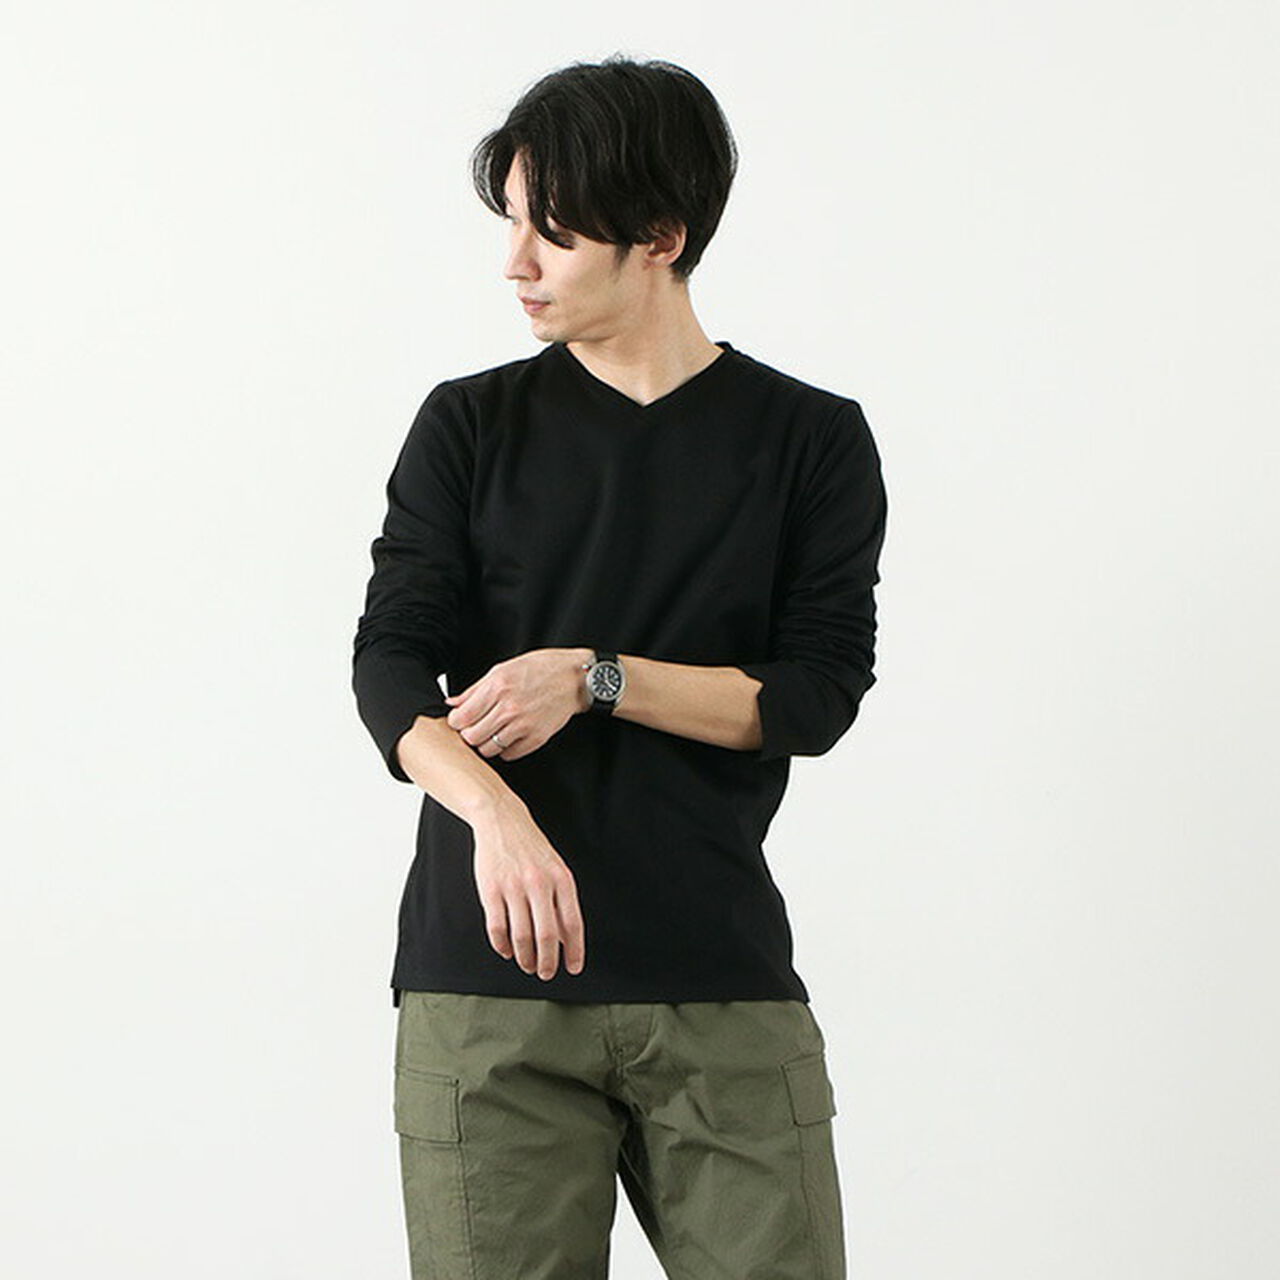 Tokyo Made V-Neck Long Sleeve Dress T-Shirt,Black, large image number 0